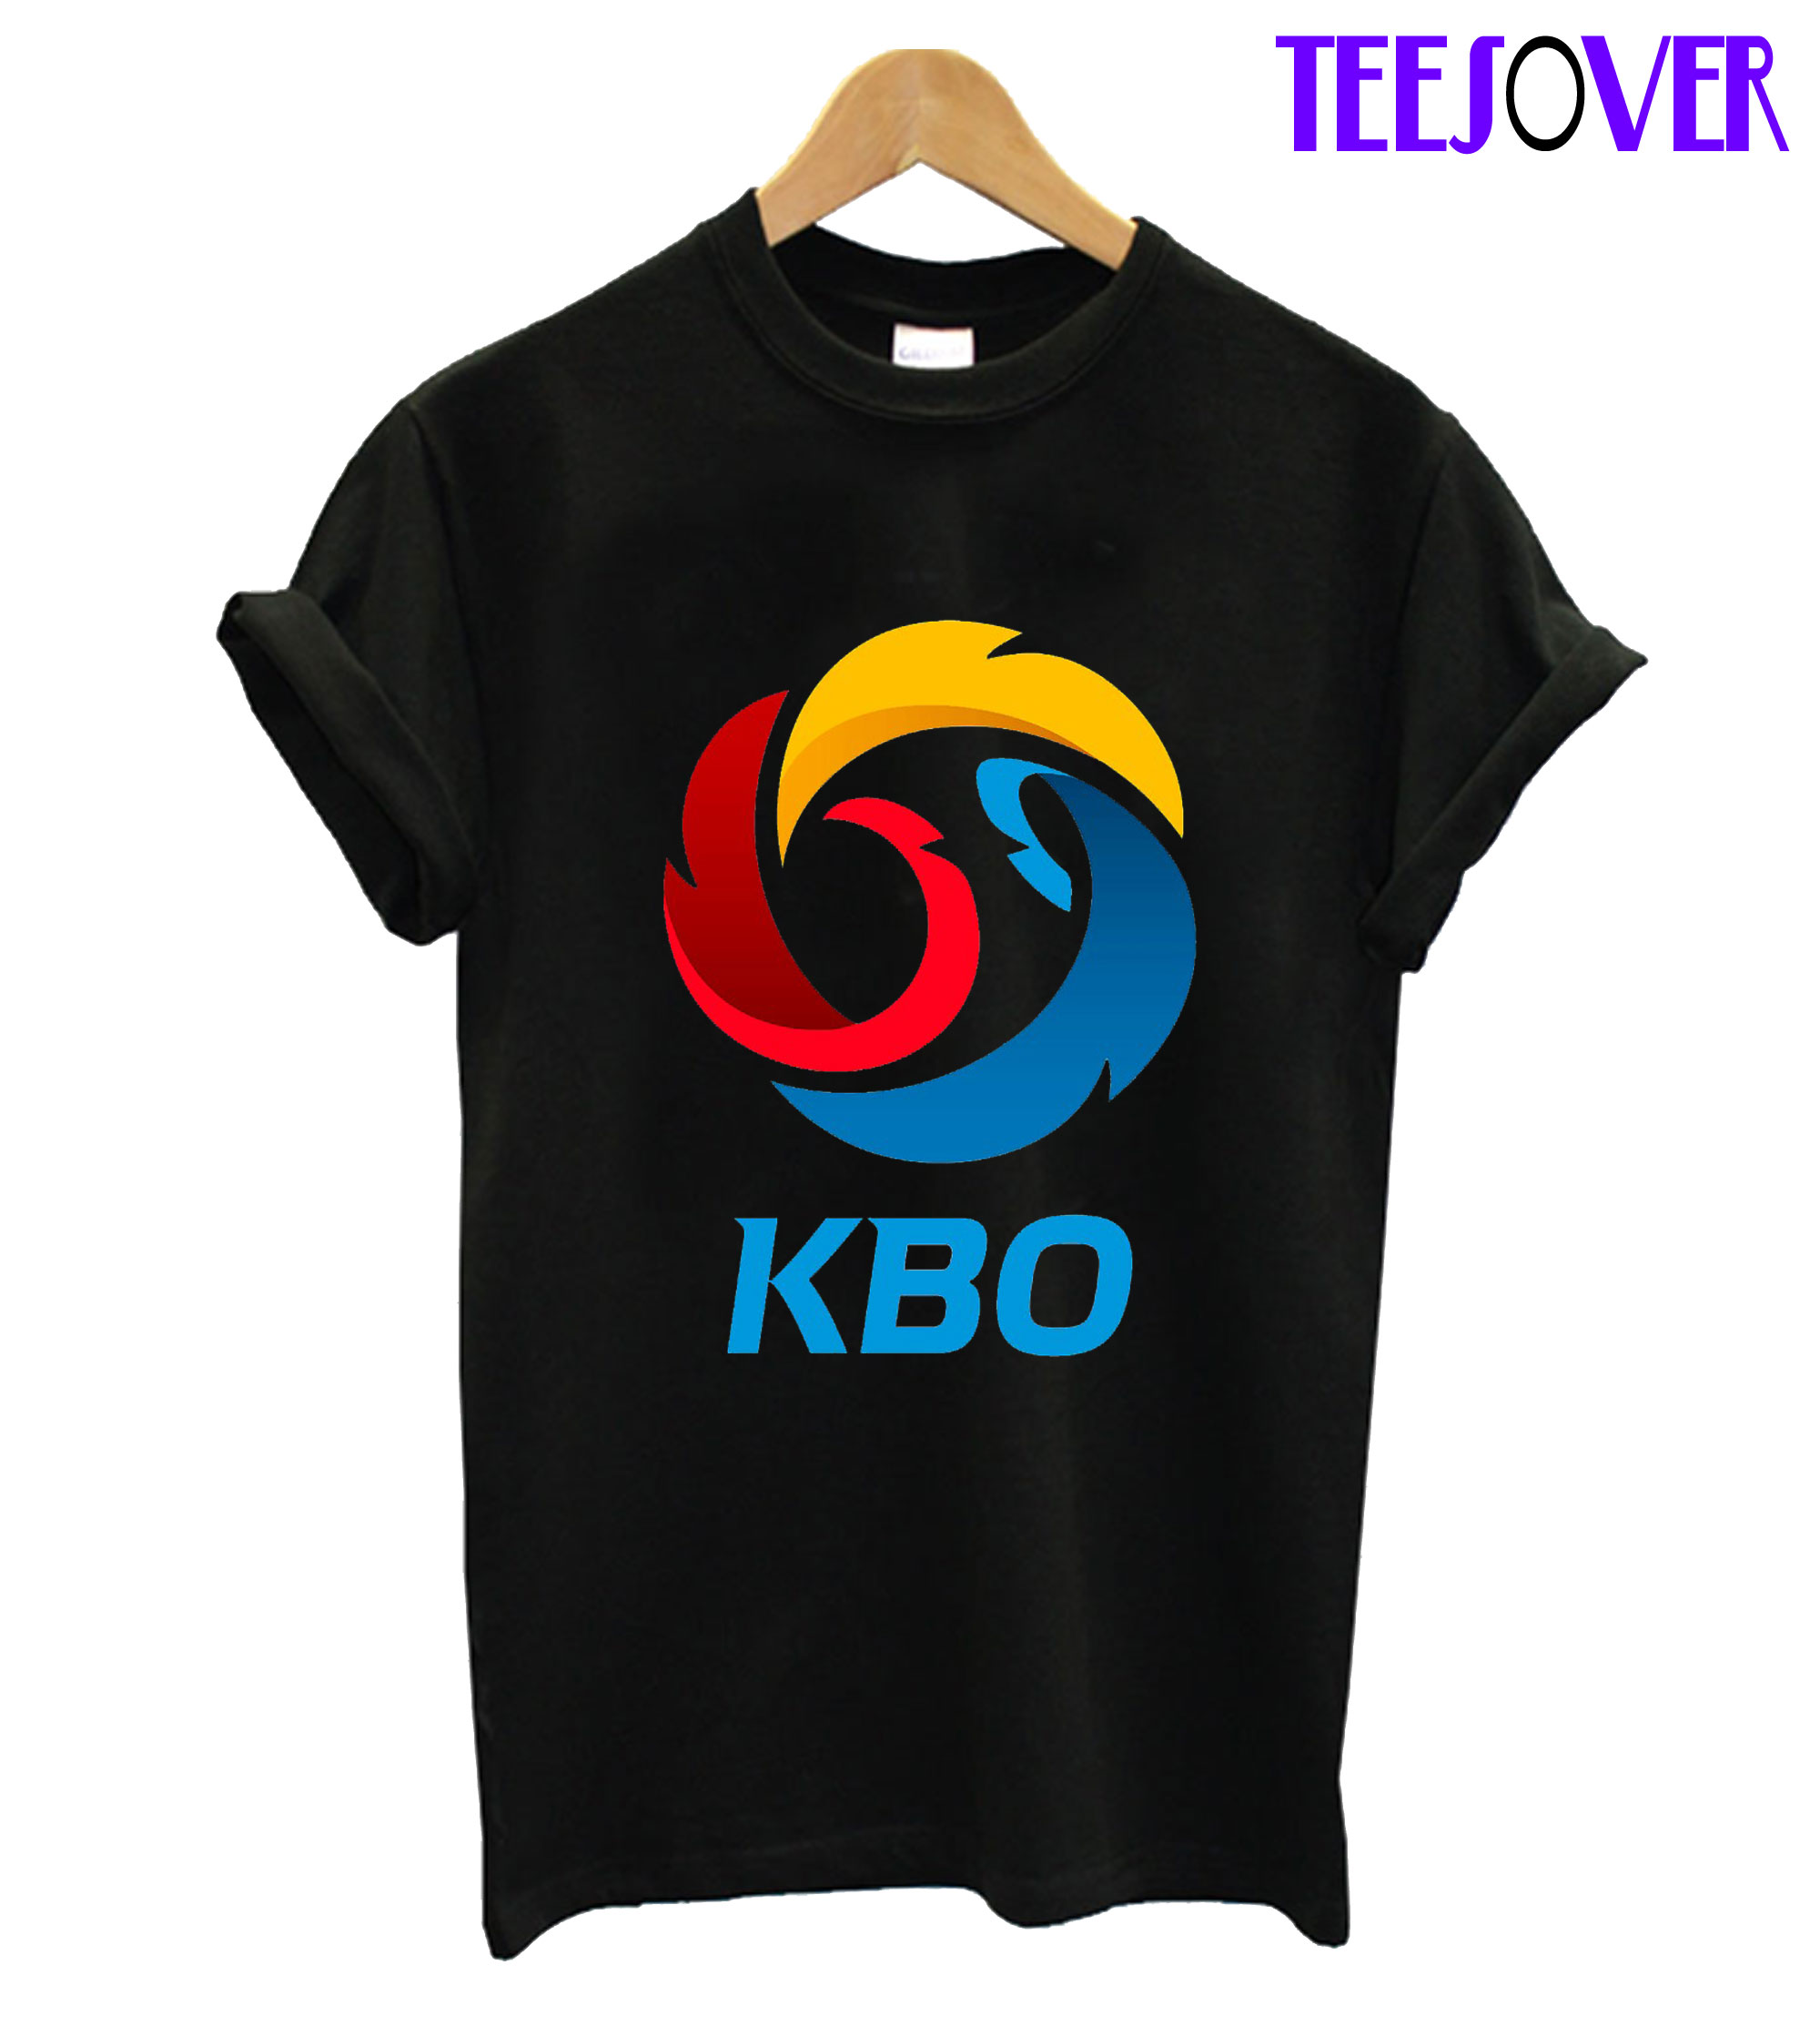 kbo shirts